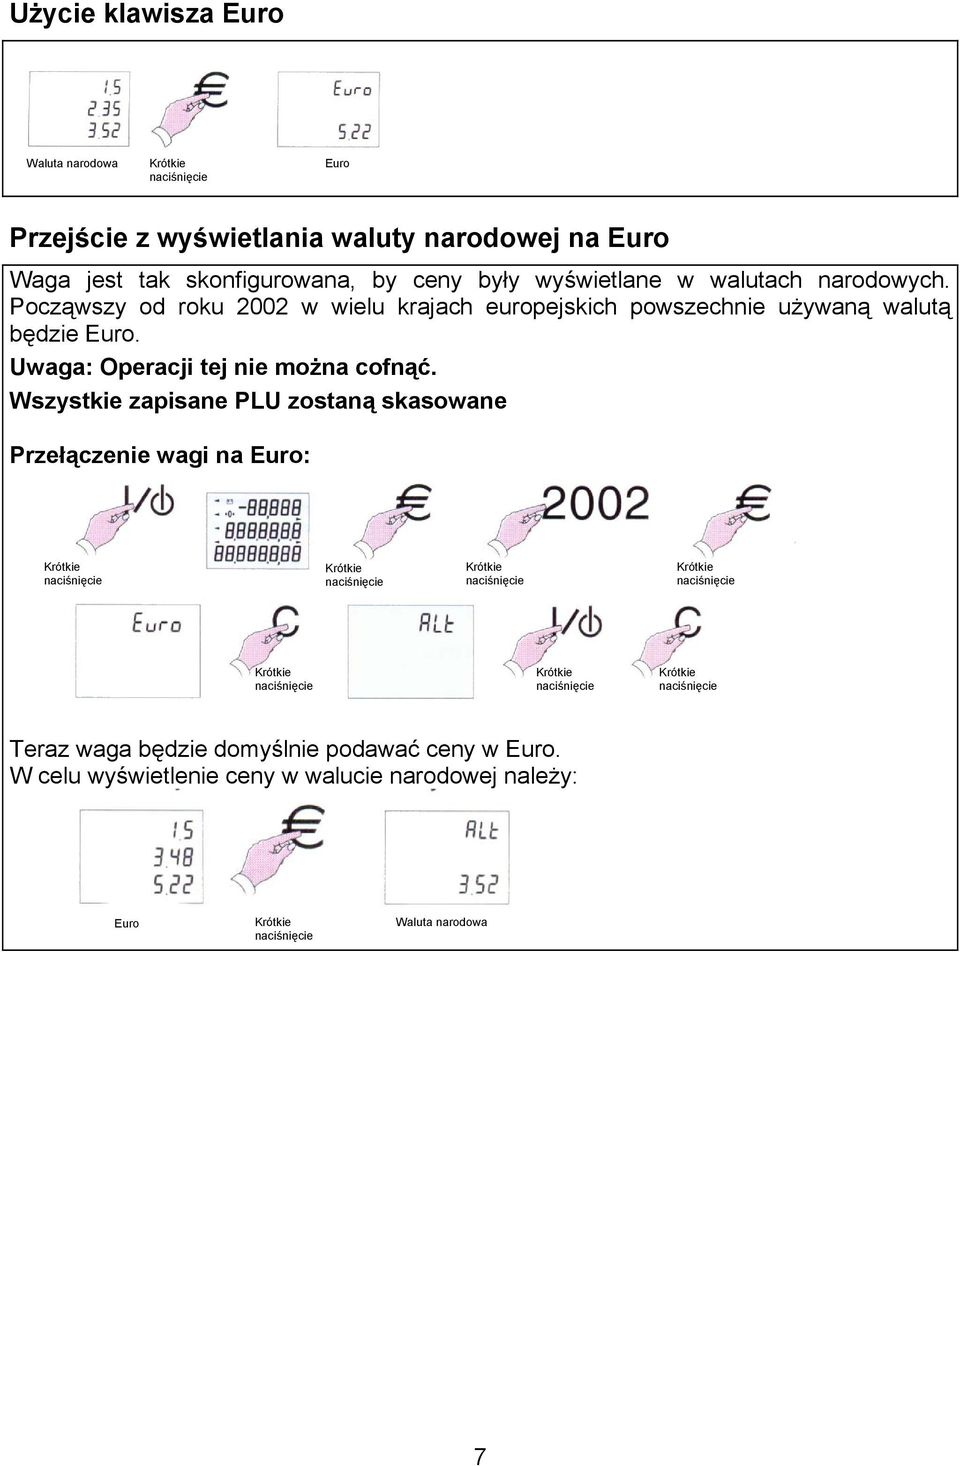 Począwszy od roku 2002 w wielu krajach europejskich powszechnie używaną walutą będzie Euro.